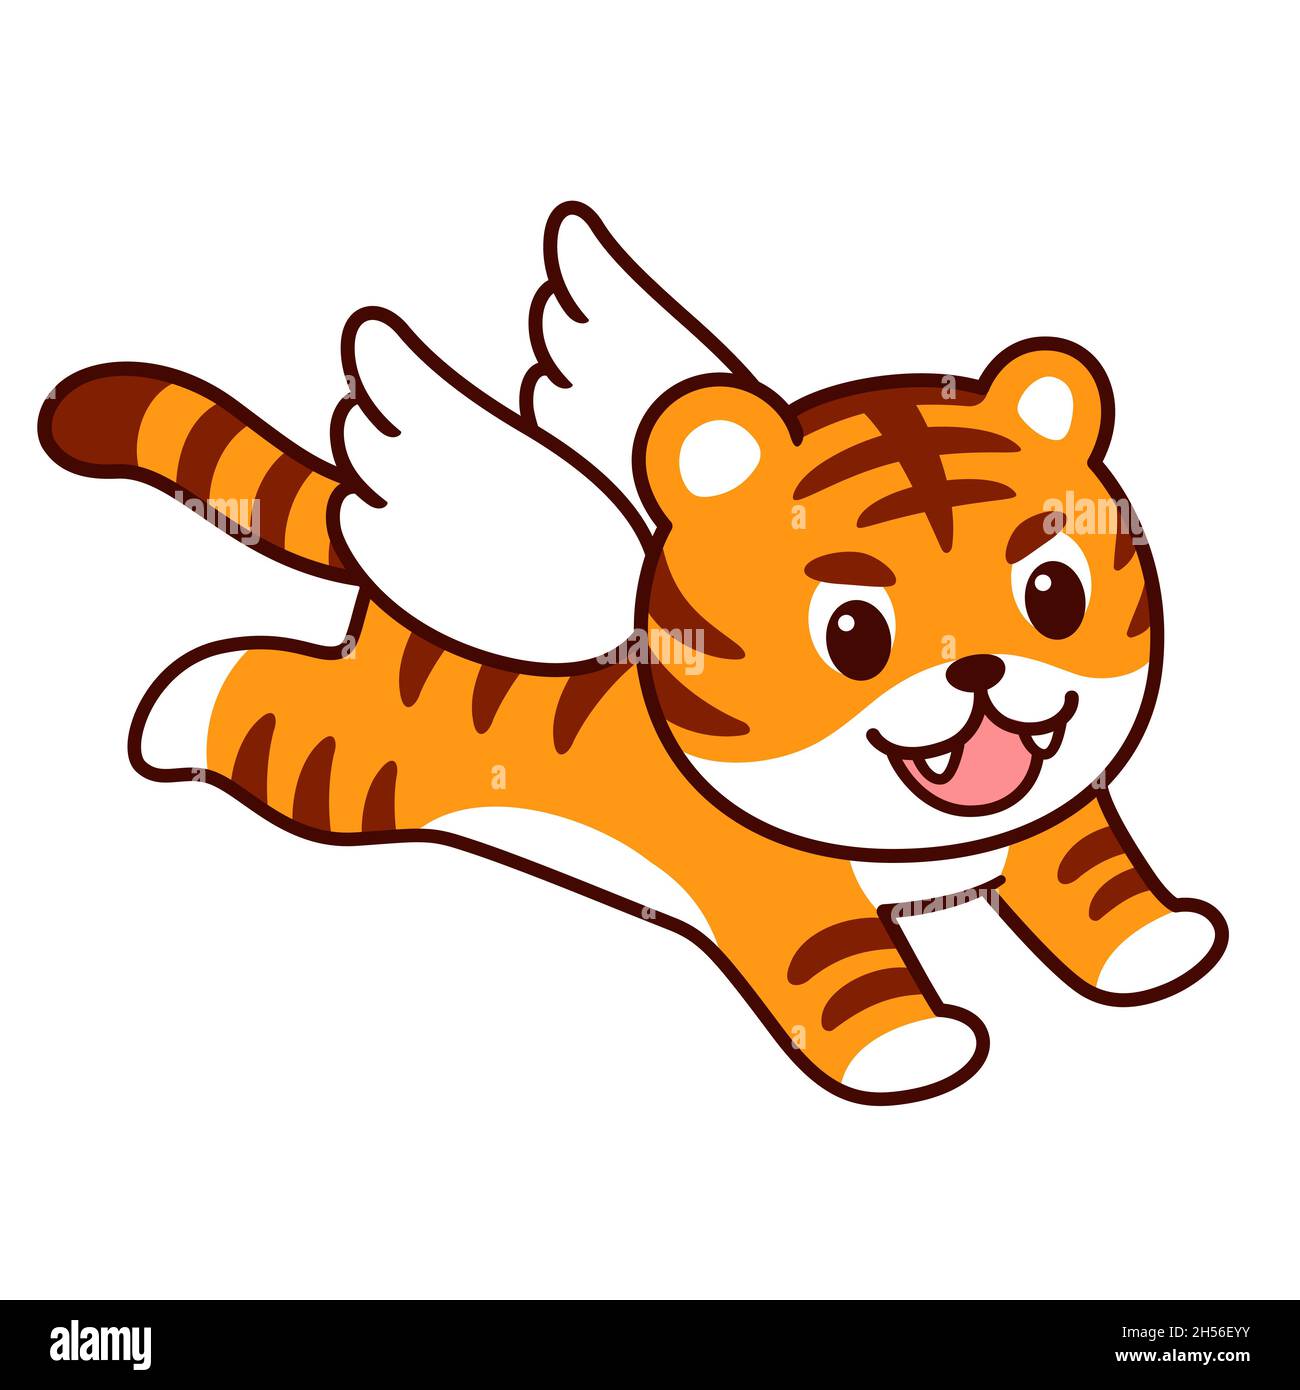 如虎添翼 Chinese expression: A tiger with wings. Cute cartoon winged tiger jumping. Vector clip art illustration. Stock Vector